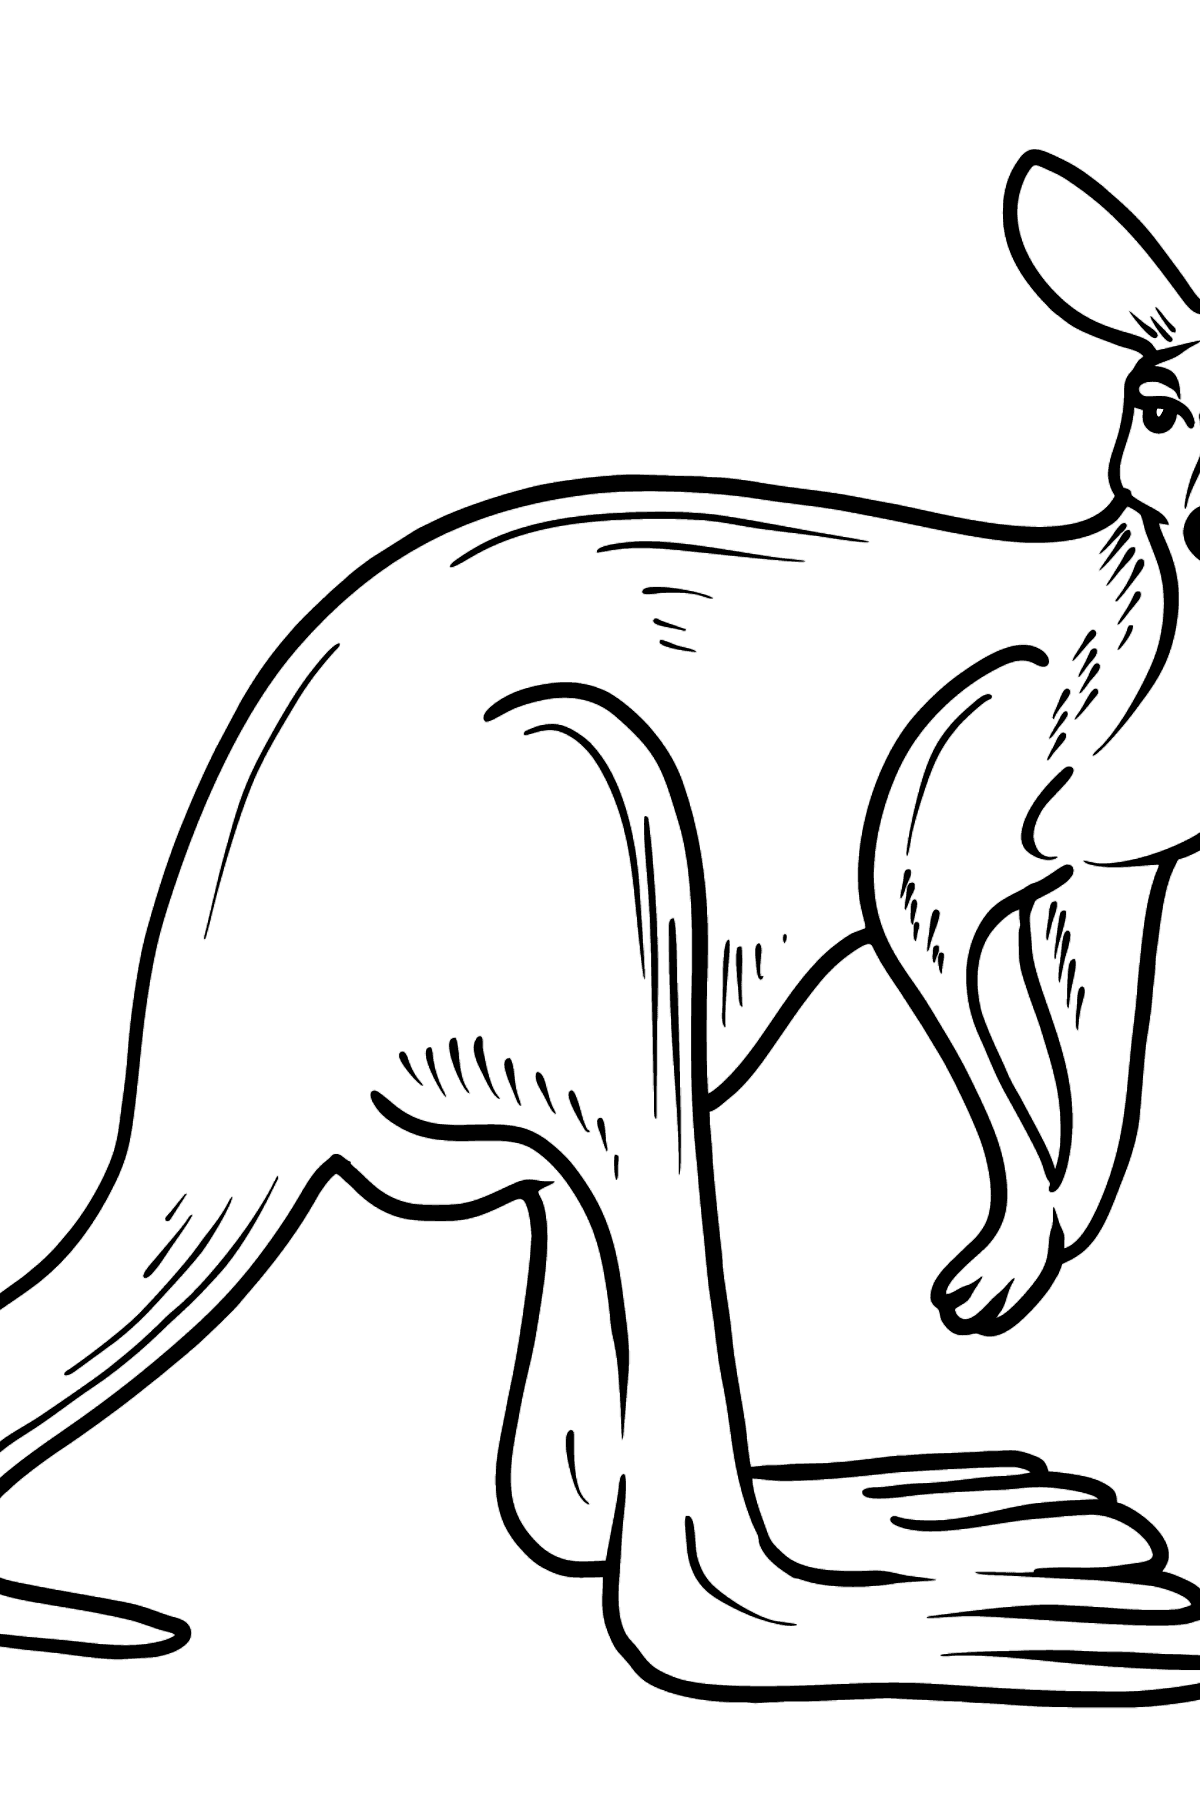 Tegning til farvning kænguru - Tegninger til farvelægning for børn